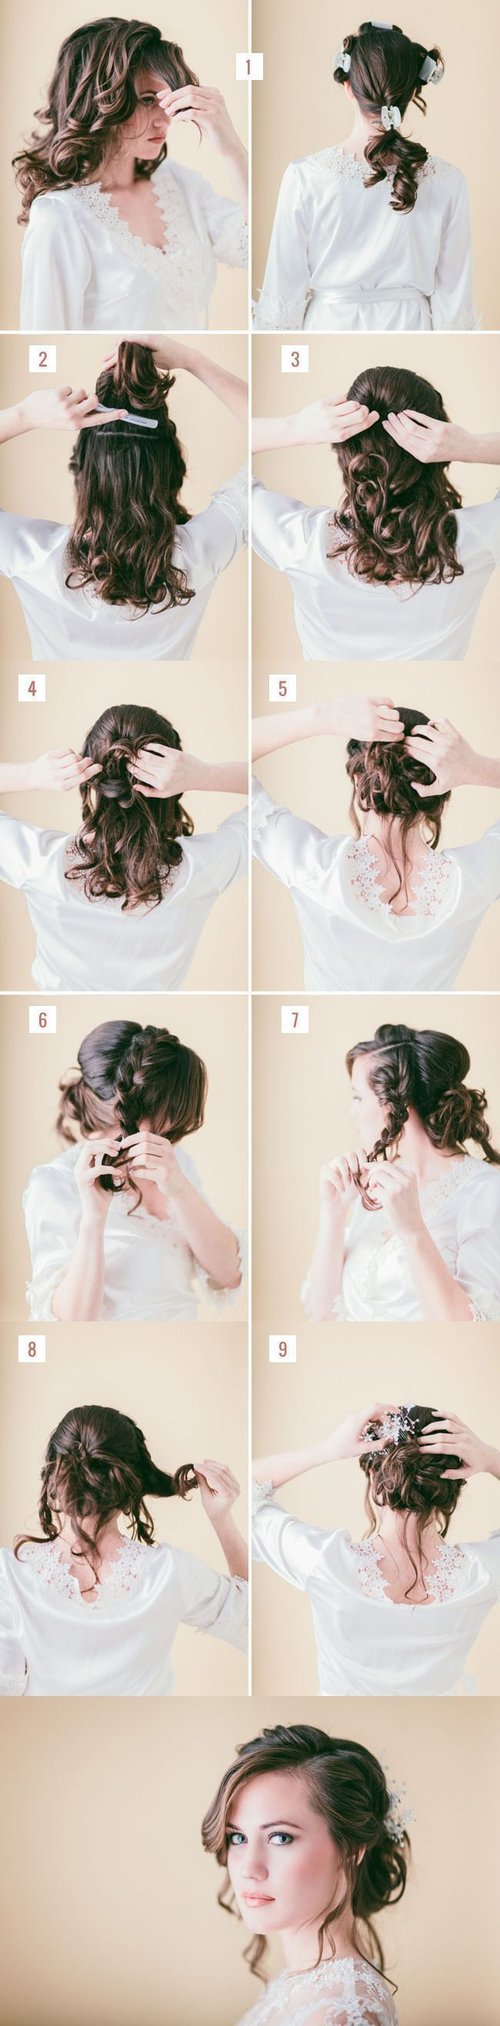  DIY – Loose braided updo tutorial weddings prom – Step by Step Hair Tutorial